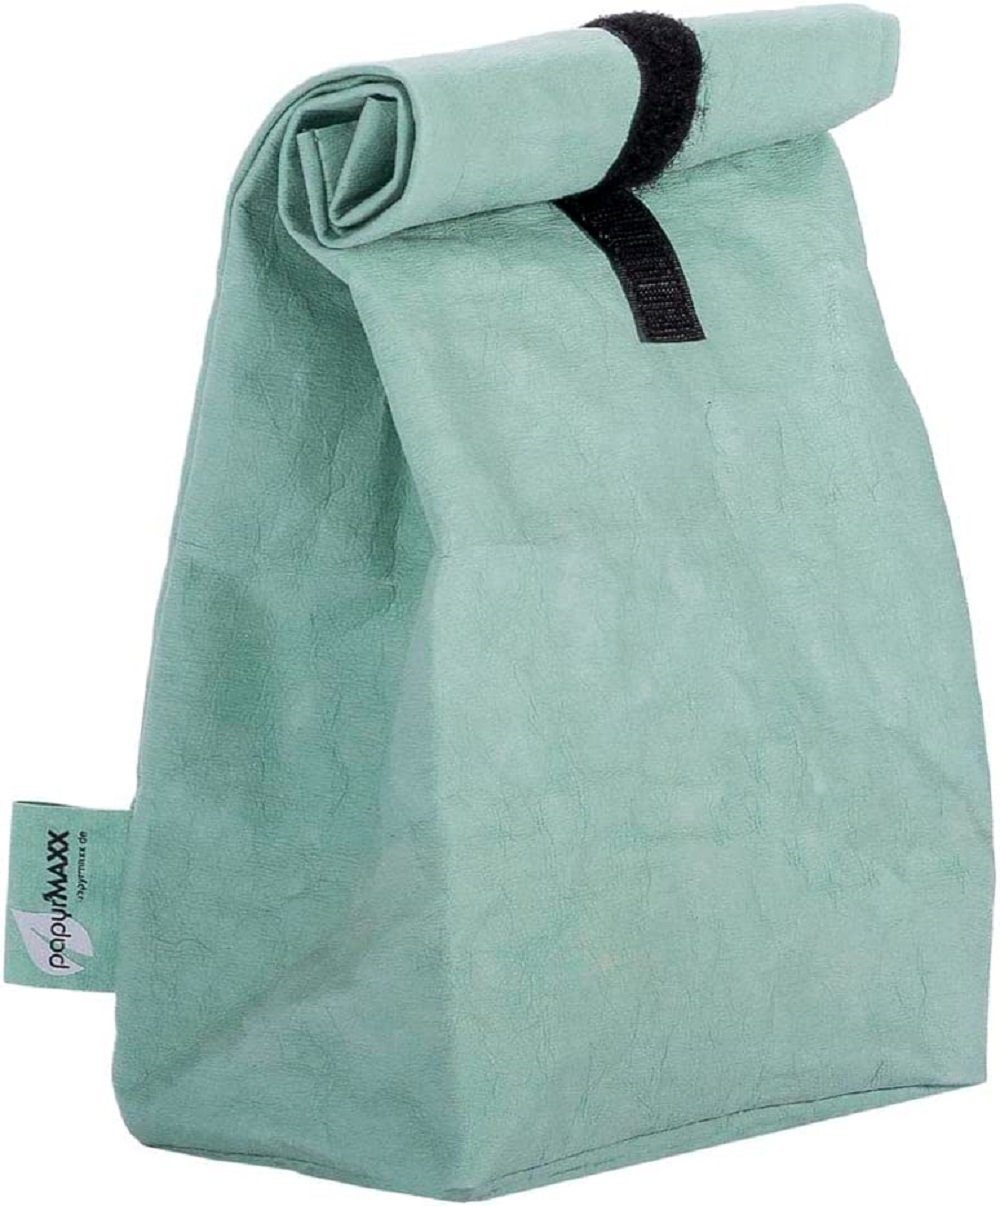 LK Trend & Style Lunchbox Rolltop-Lunchbag mit Klettverschluss, sieht aus wie Leder ist aber keins. mint